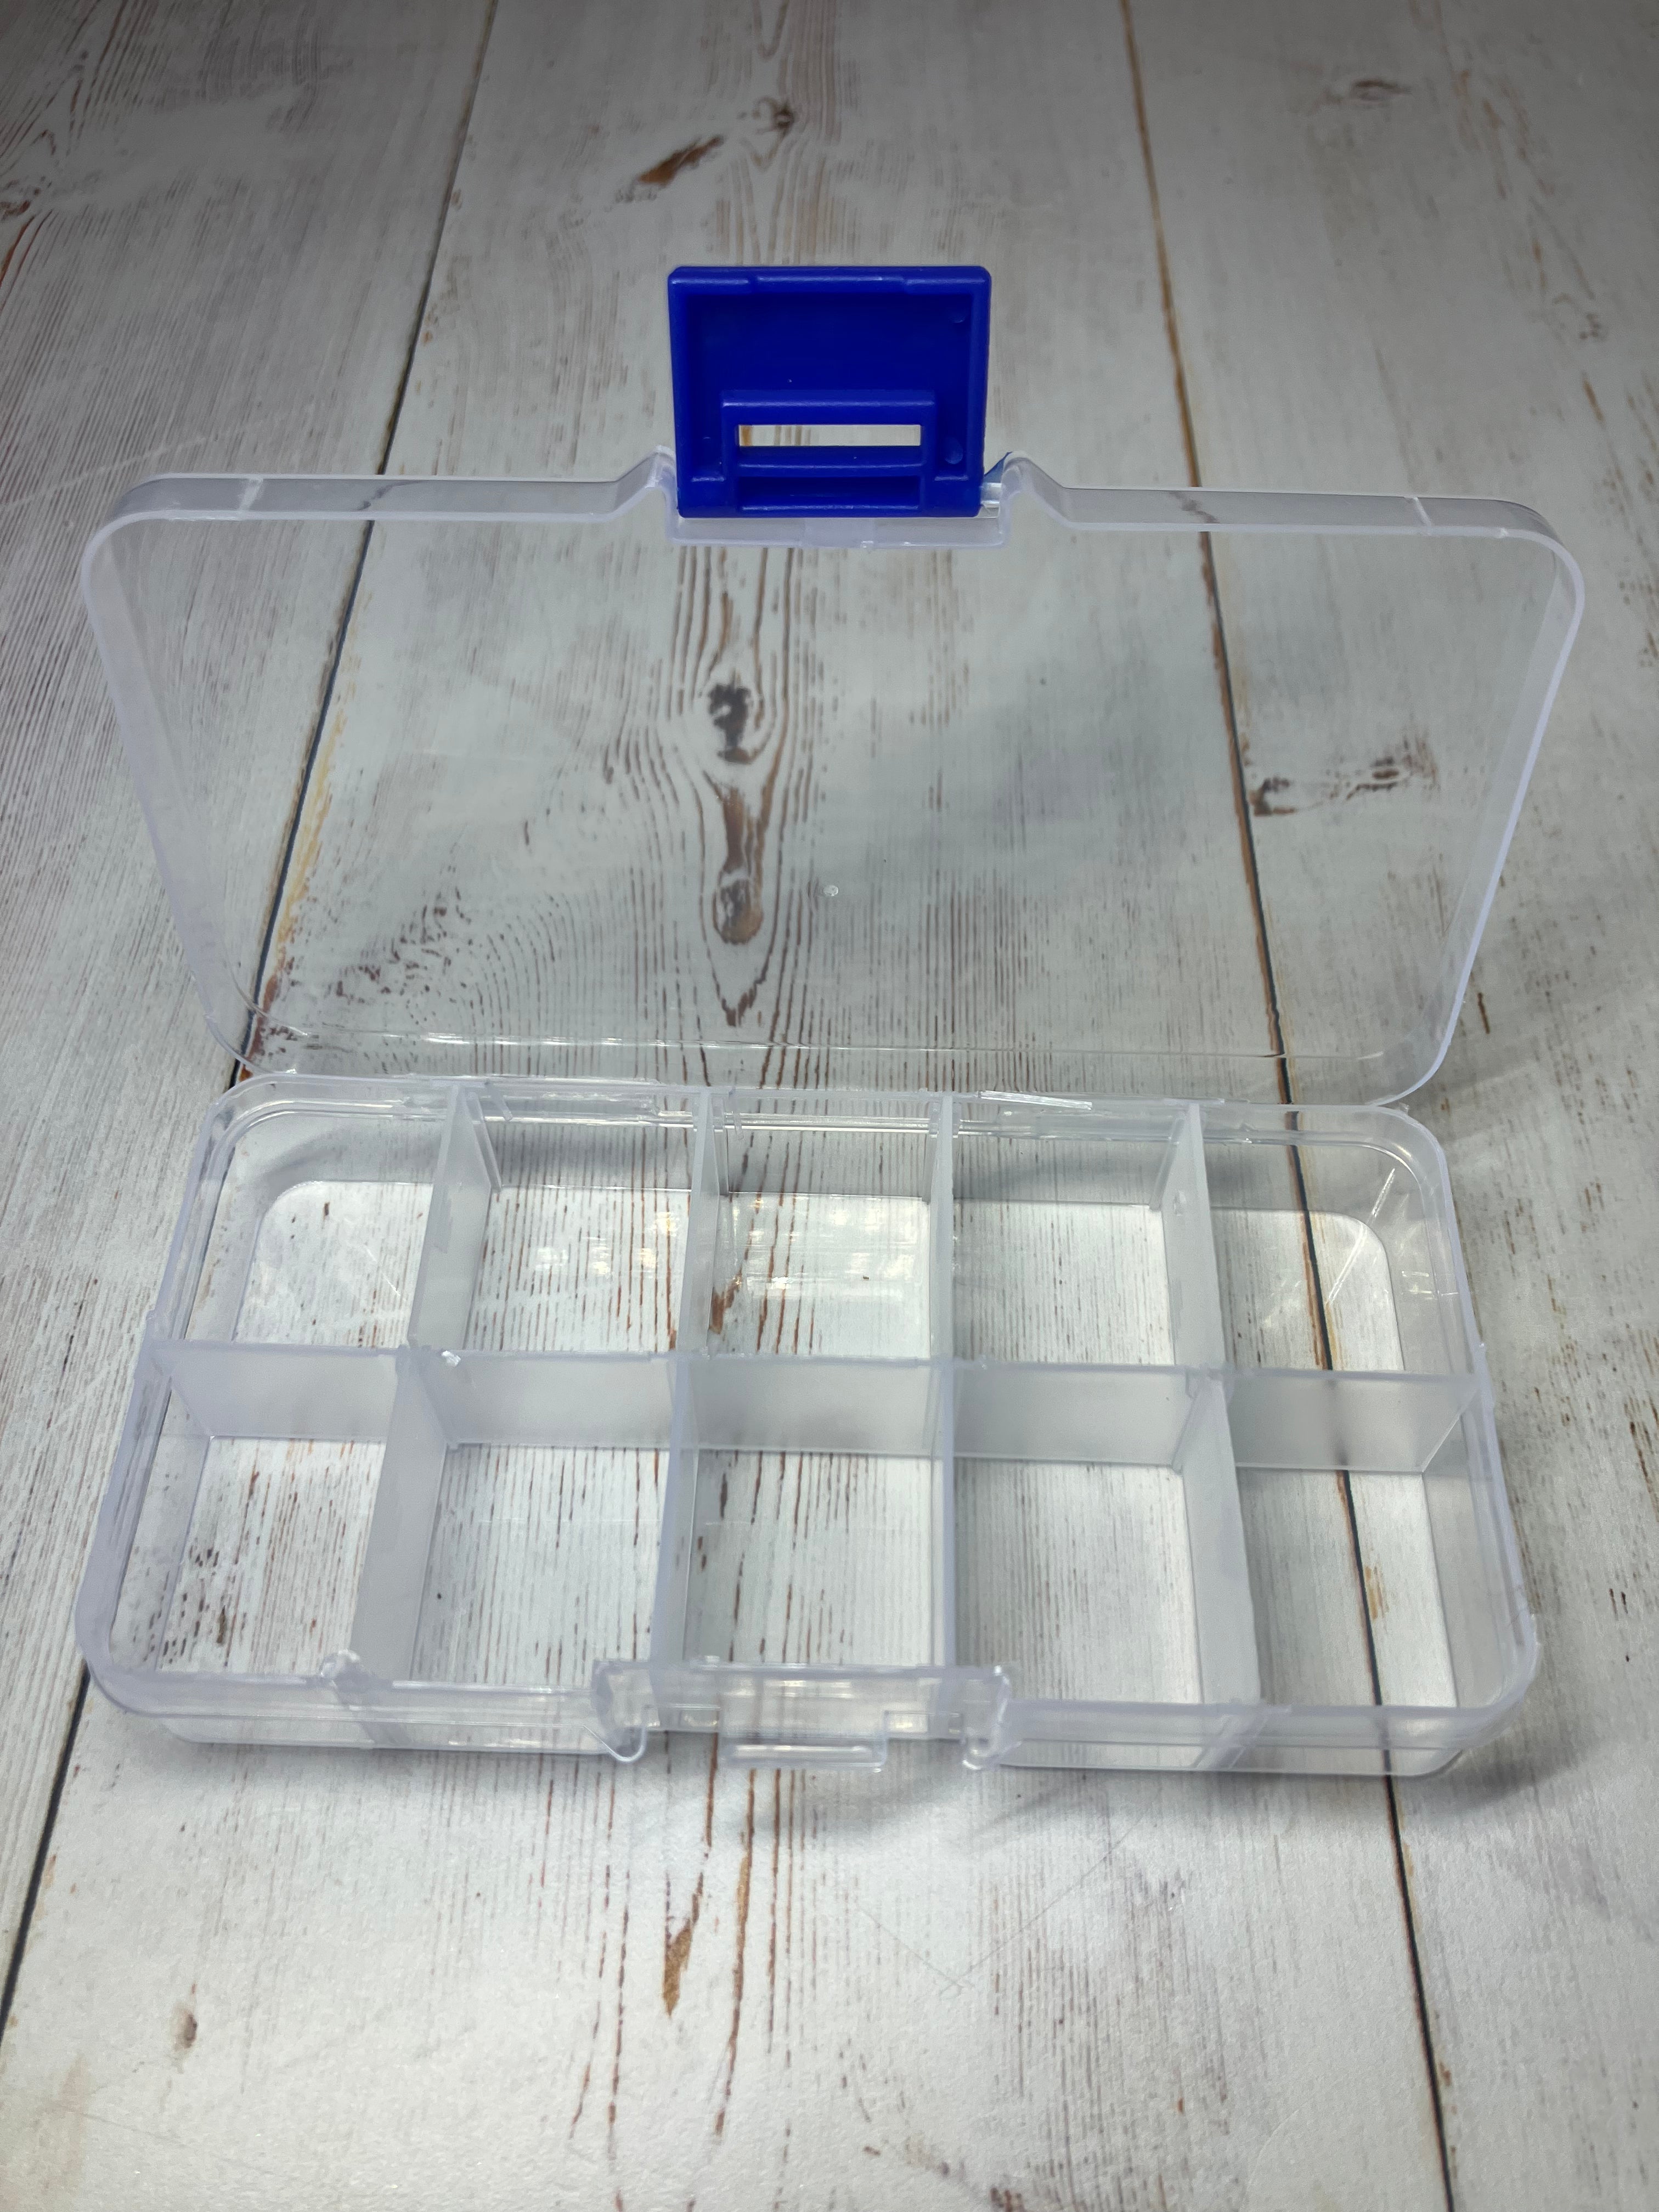 Small Plastic Organizer Box (10 Compartments) EMPTY